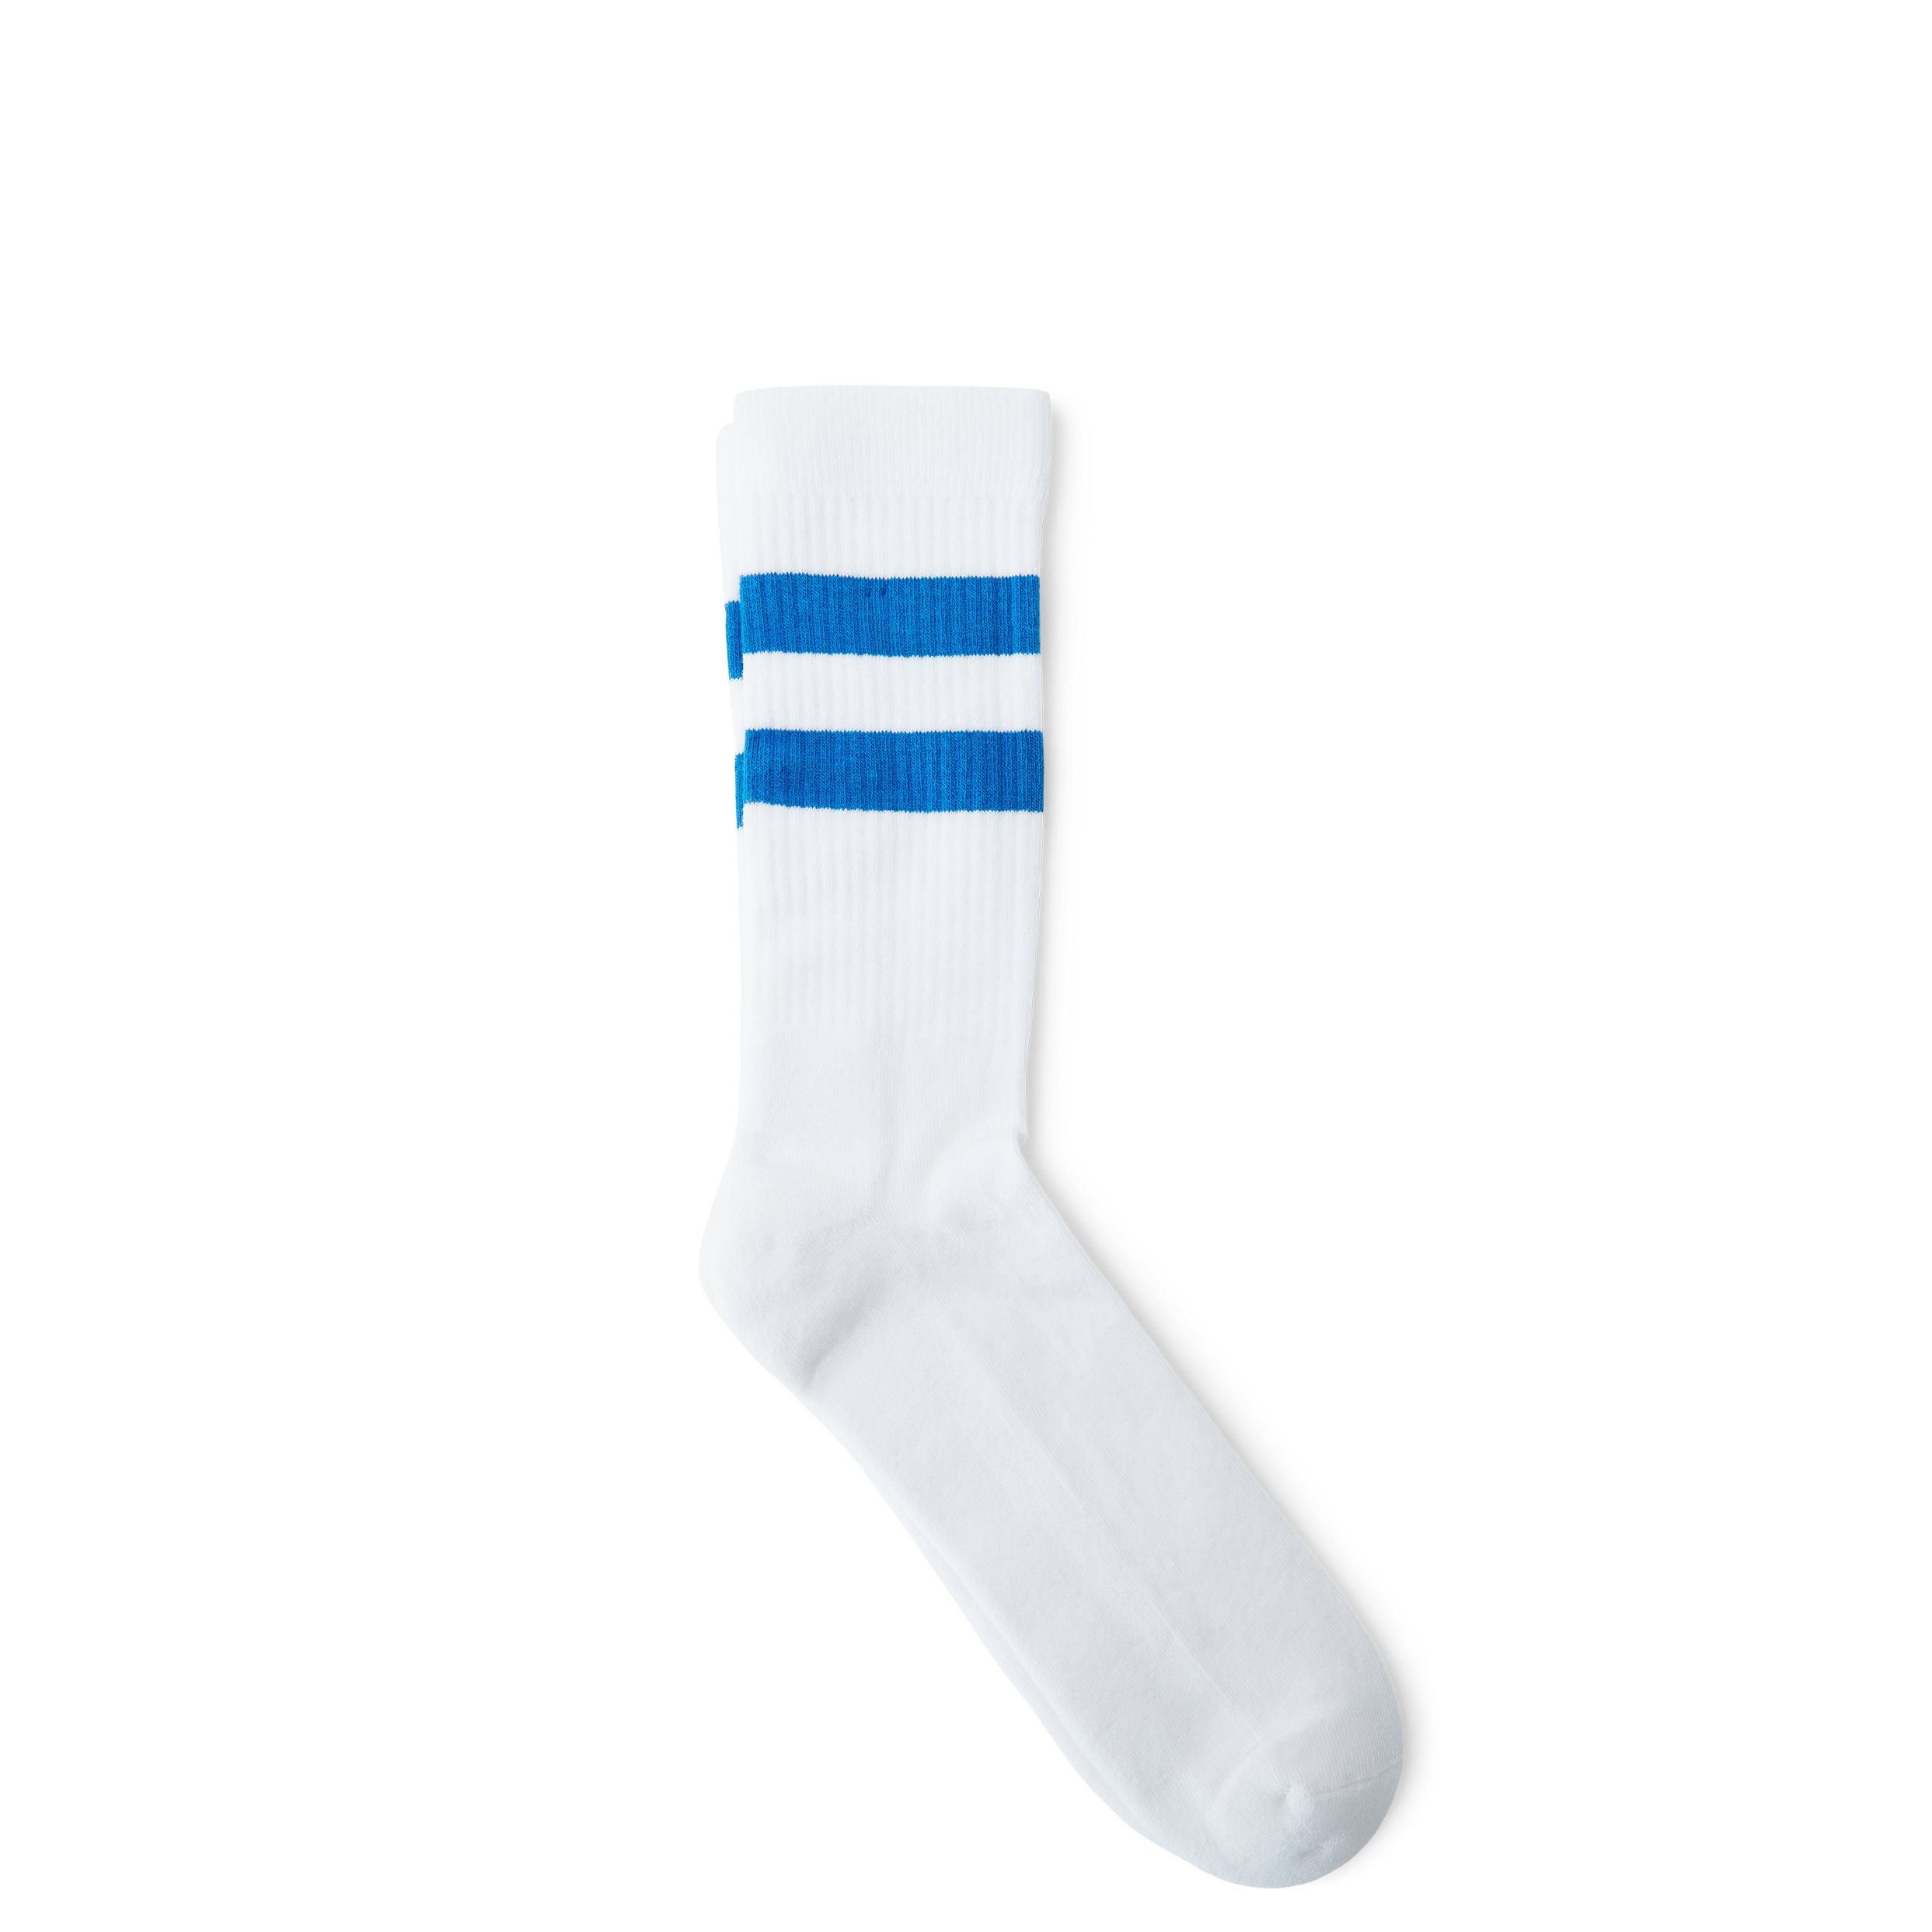 qUINT Socks TENNIS 115-12527 White